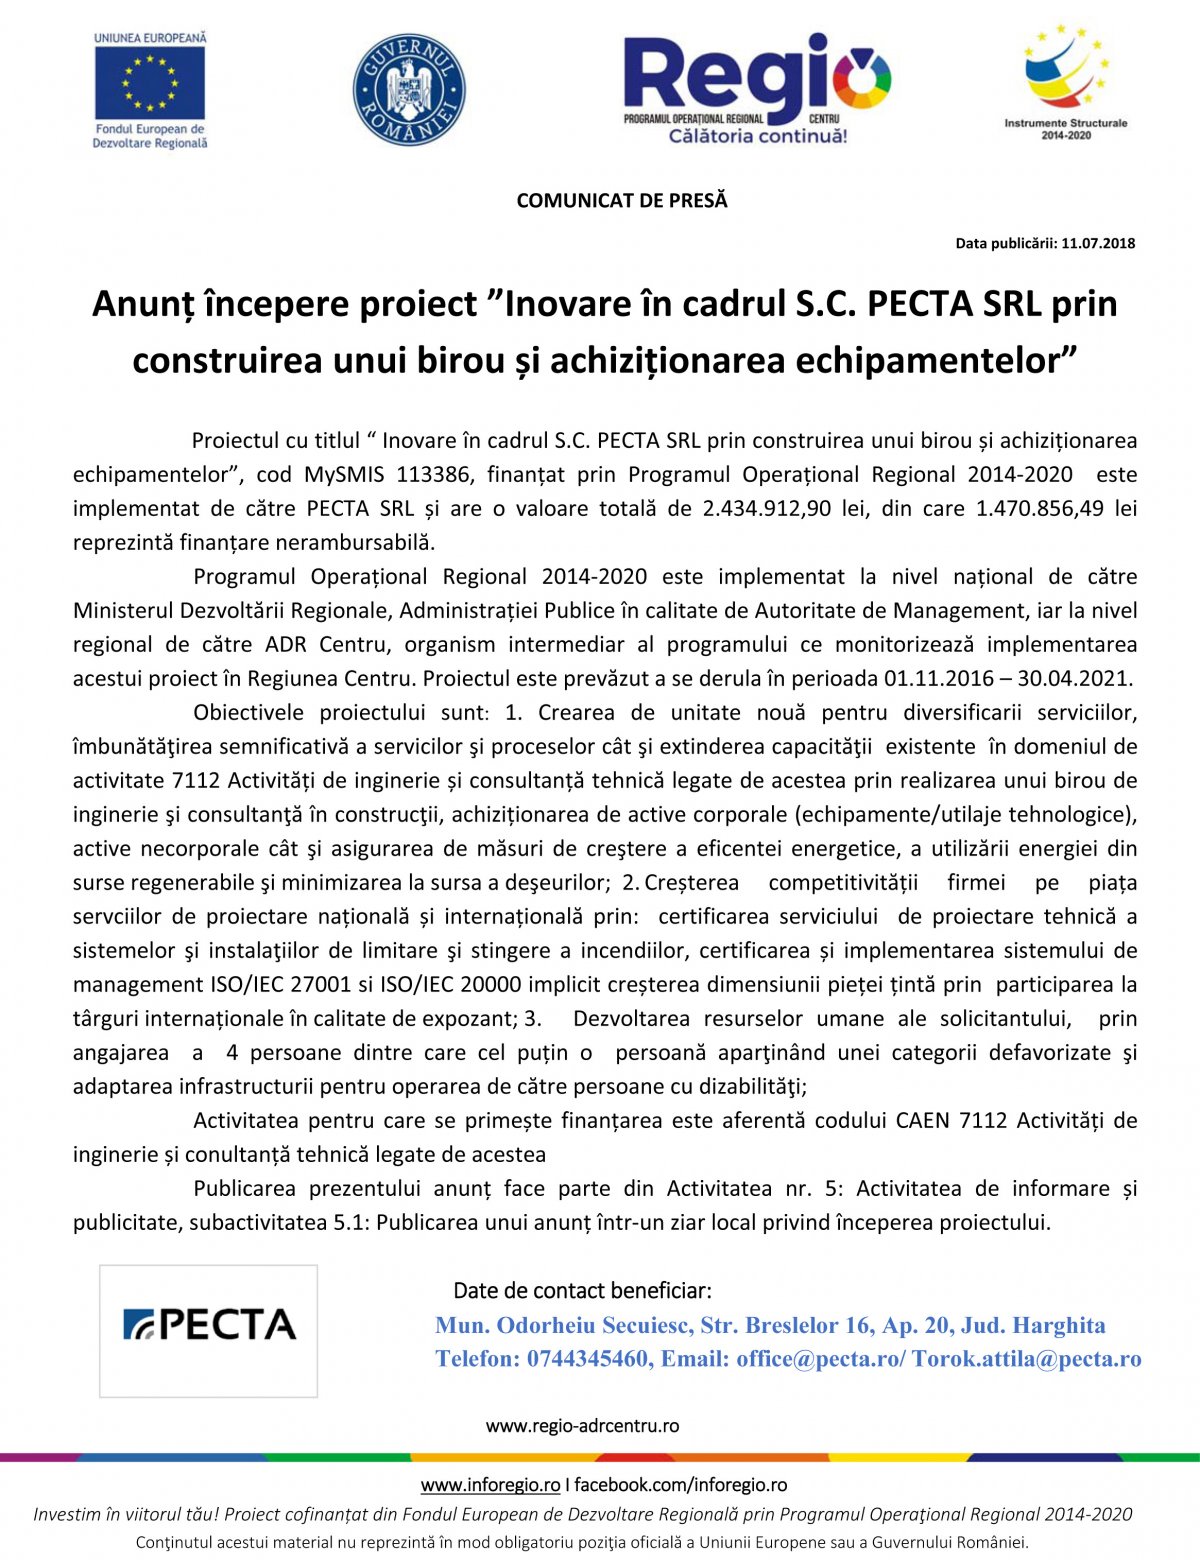 Hirdetés a PECTA Kft. újítása irodaépítés és berendezések vásárlása által nevű projekt elkezdéséről 